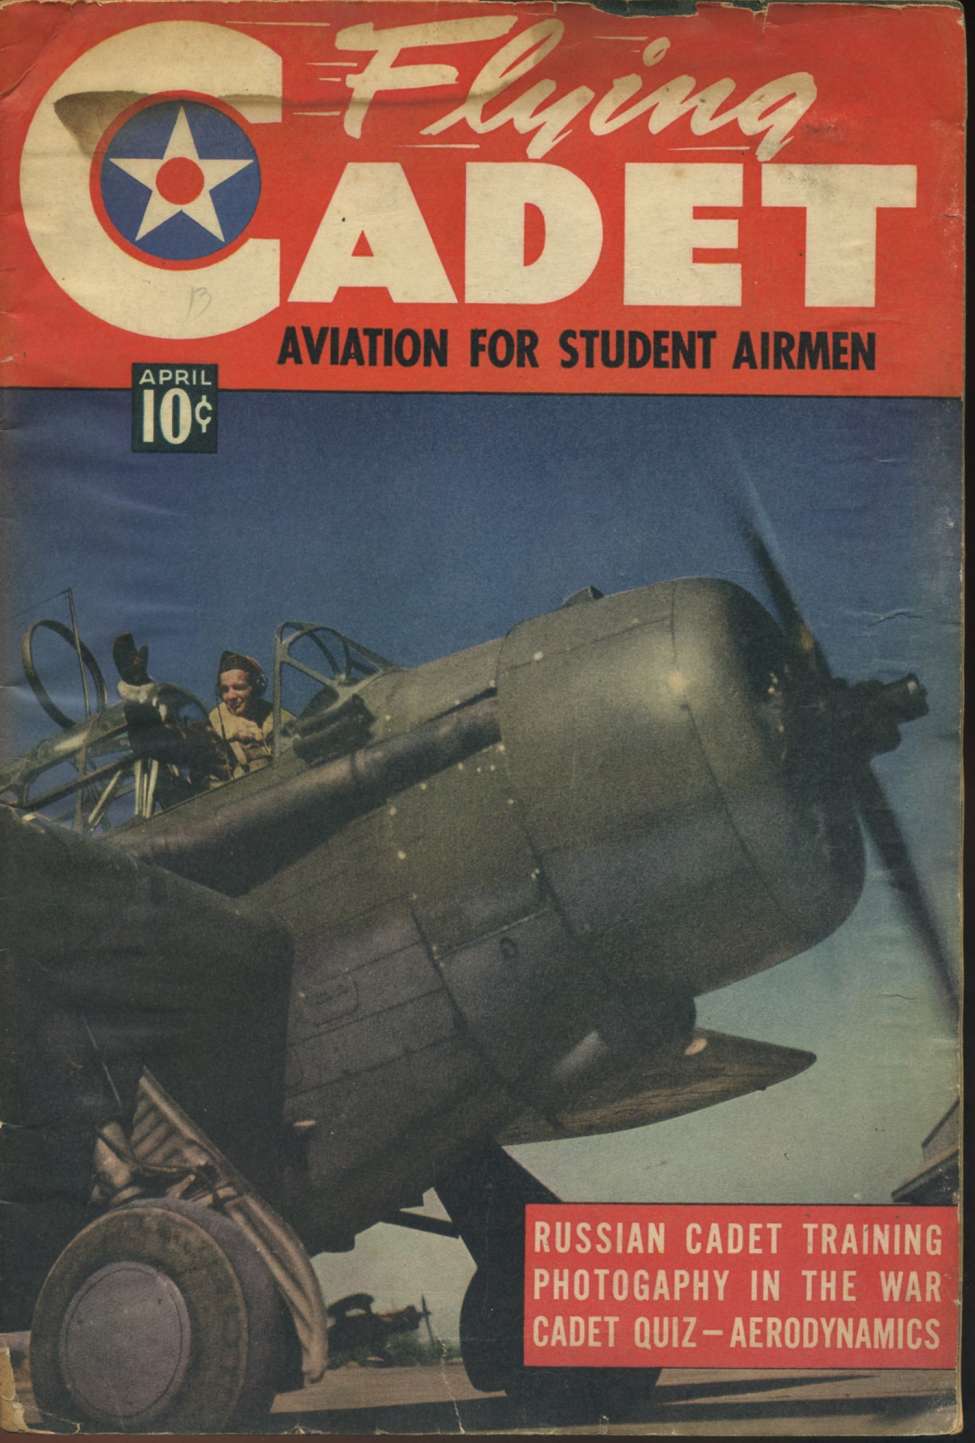 Book Cover For Flying Cadet Magazine v1 3